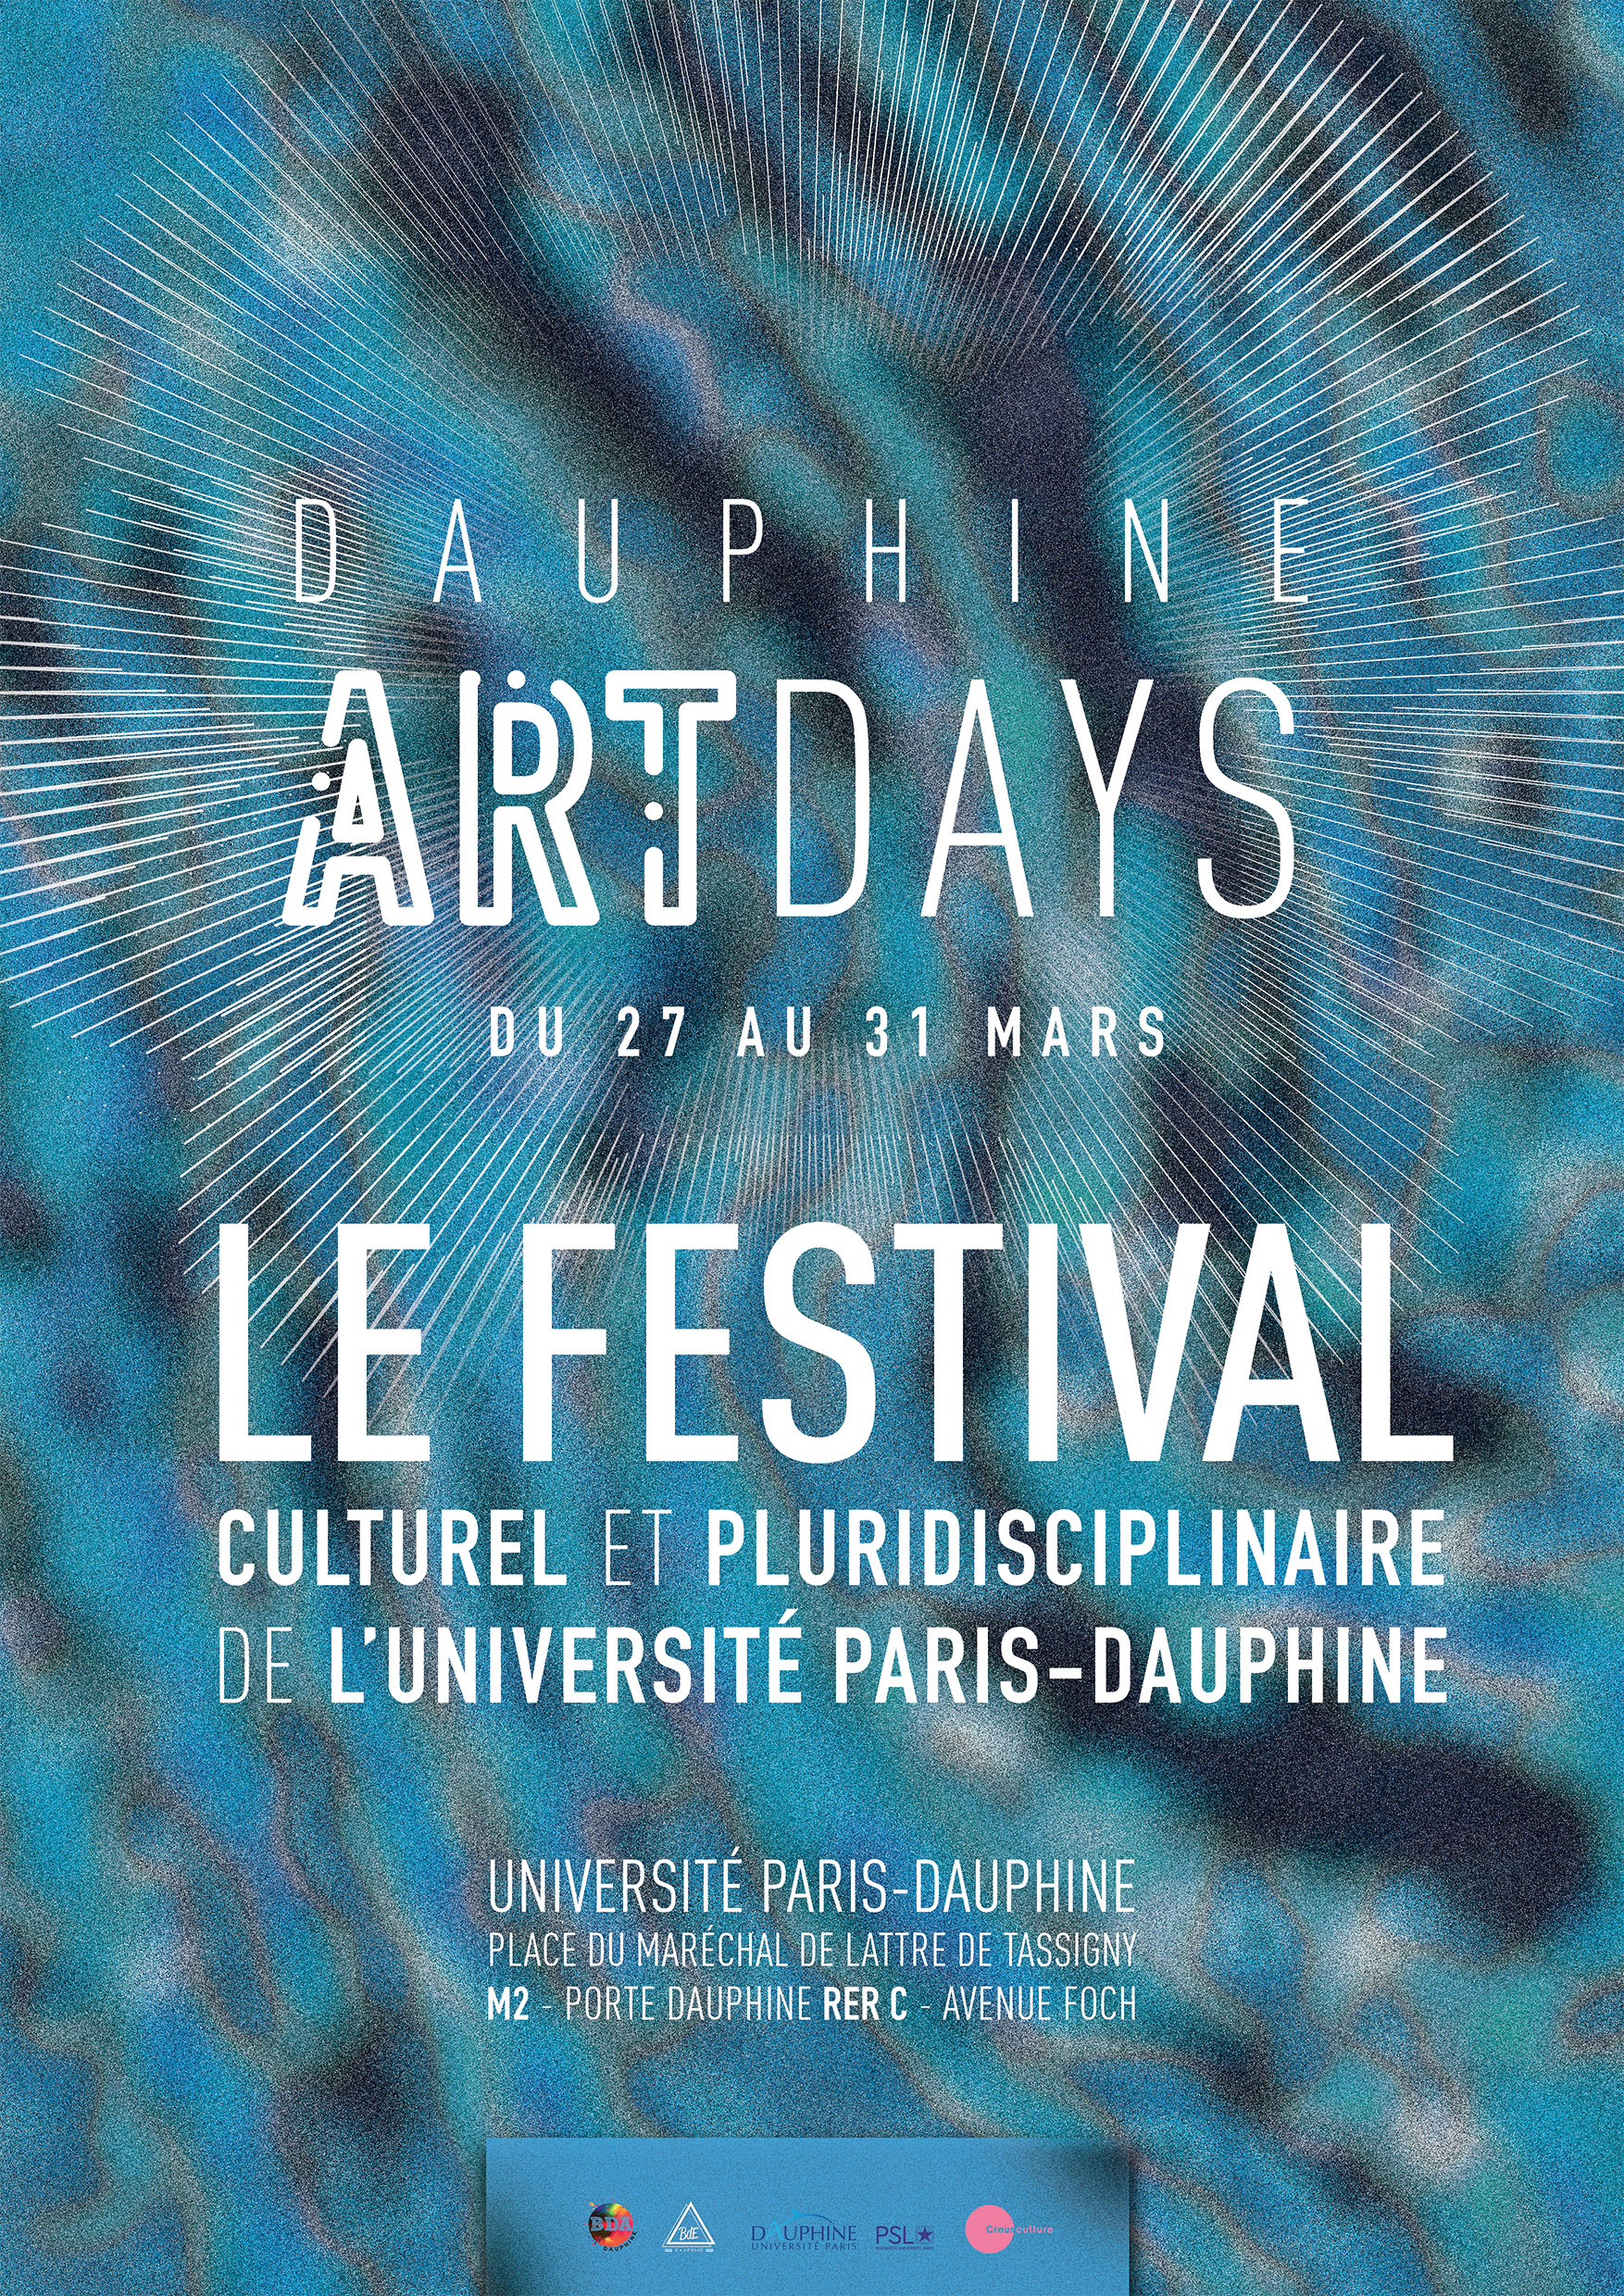 On a testé pour vous : le défilé des Dauphine Art Days